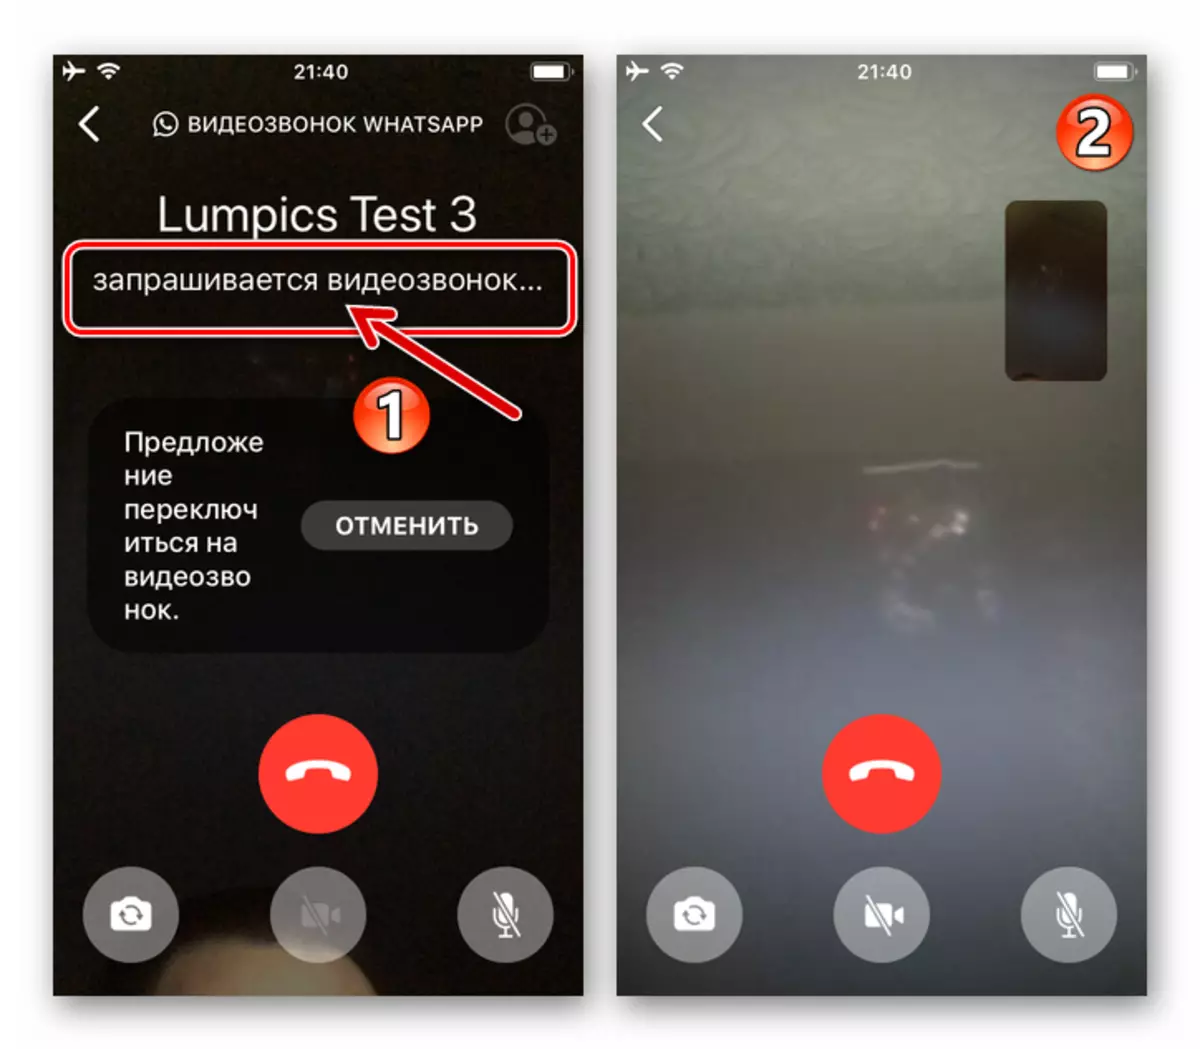 WhatsApp voor iOS-aanvraag om naar een videogesprek te gaan in het proces van spraakoproep uitgevoerd door de Messenger